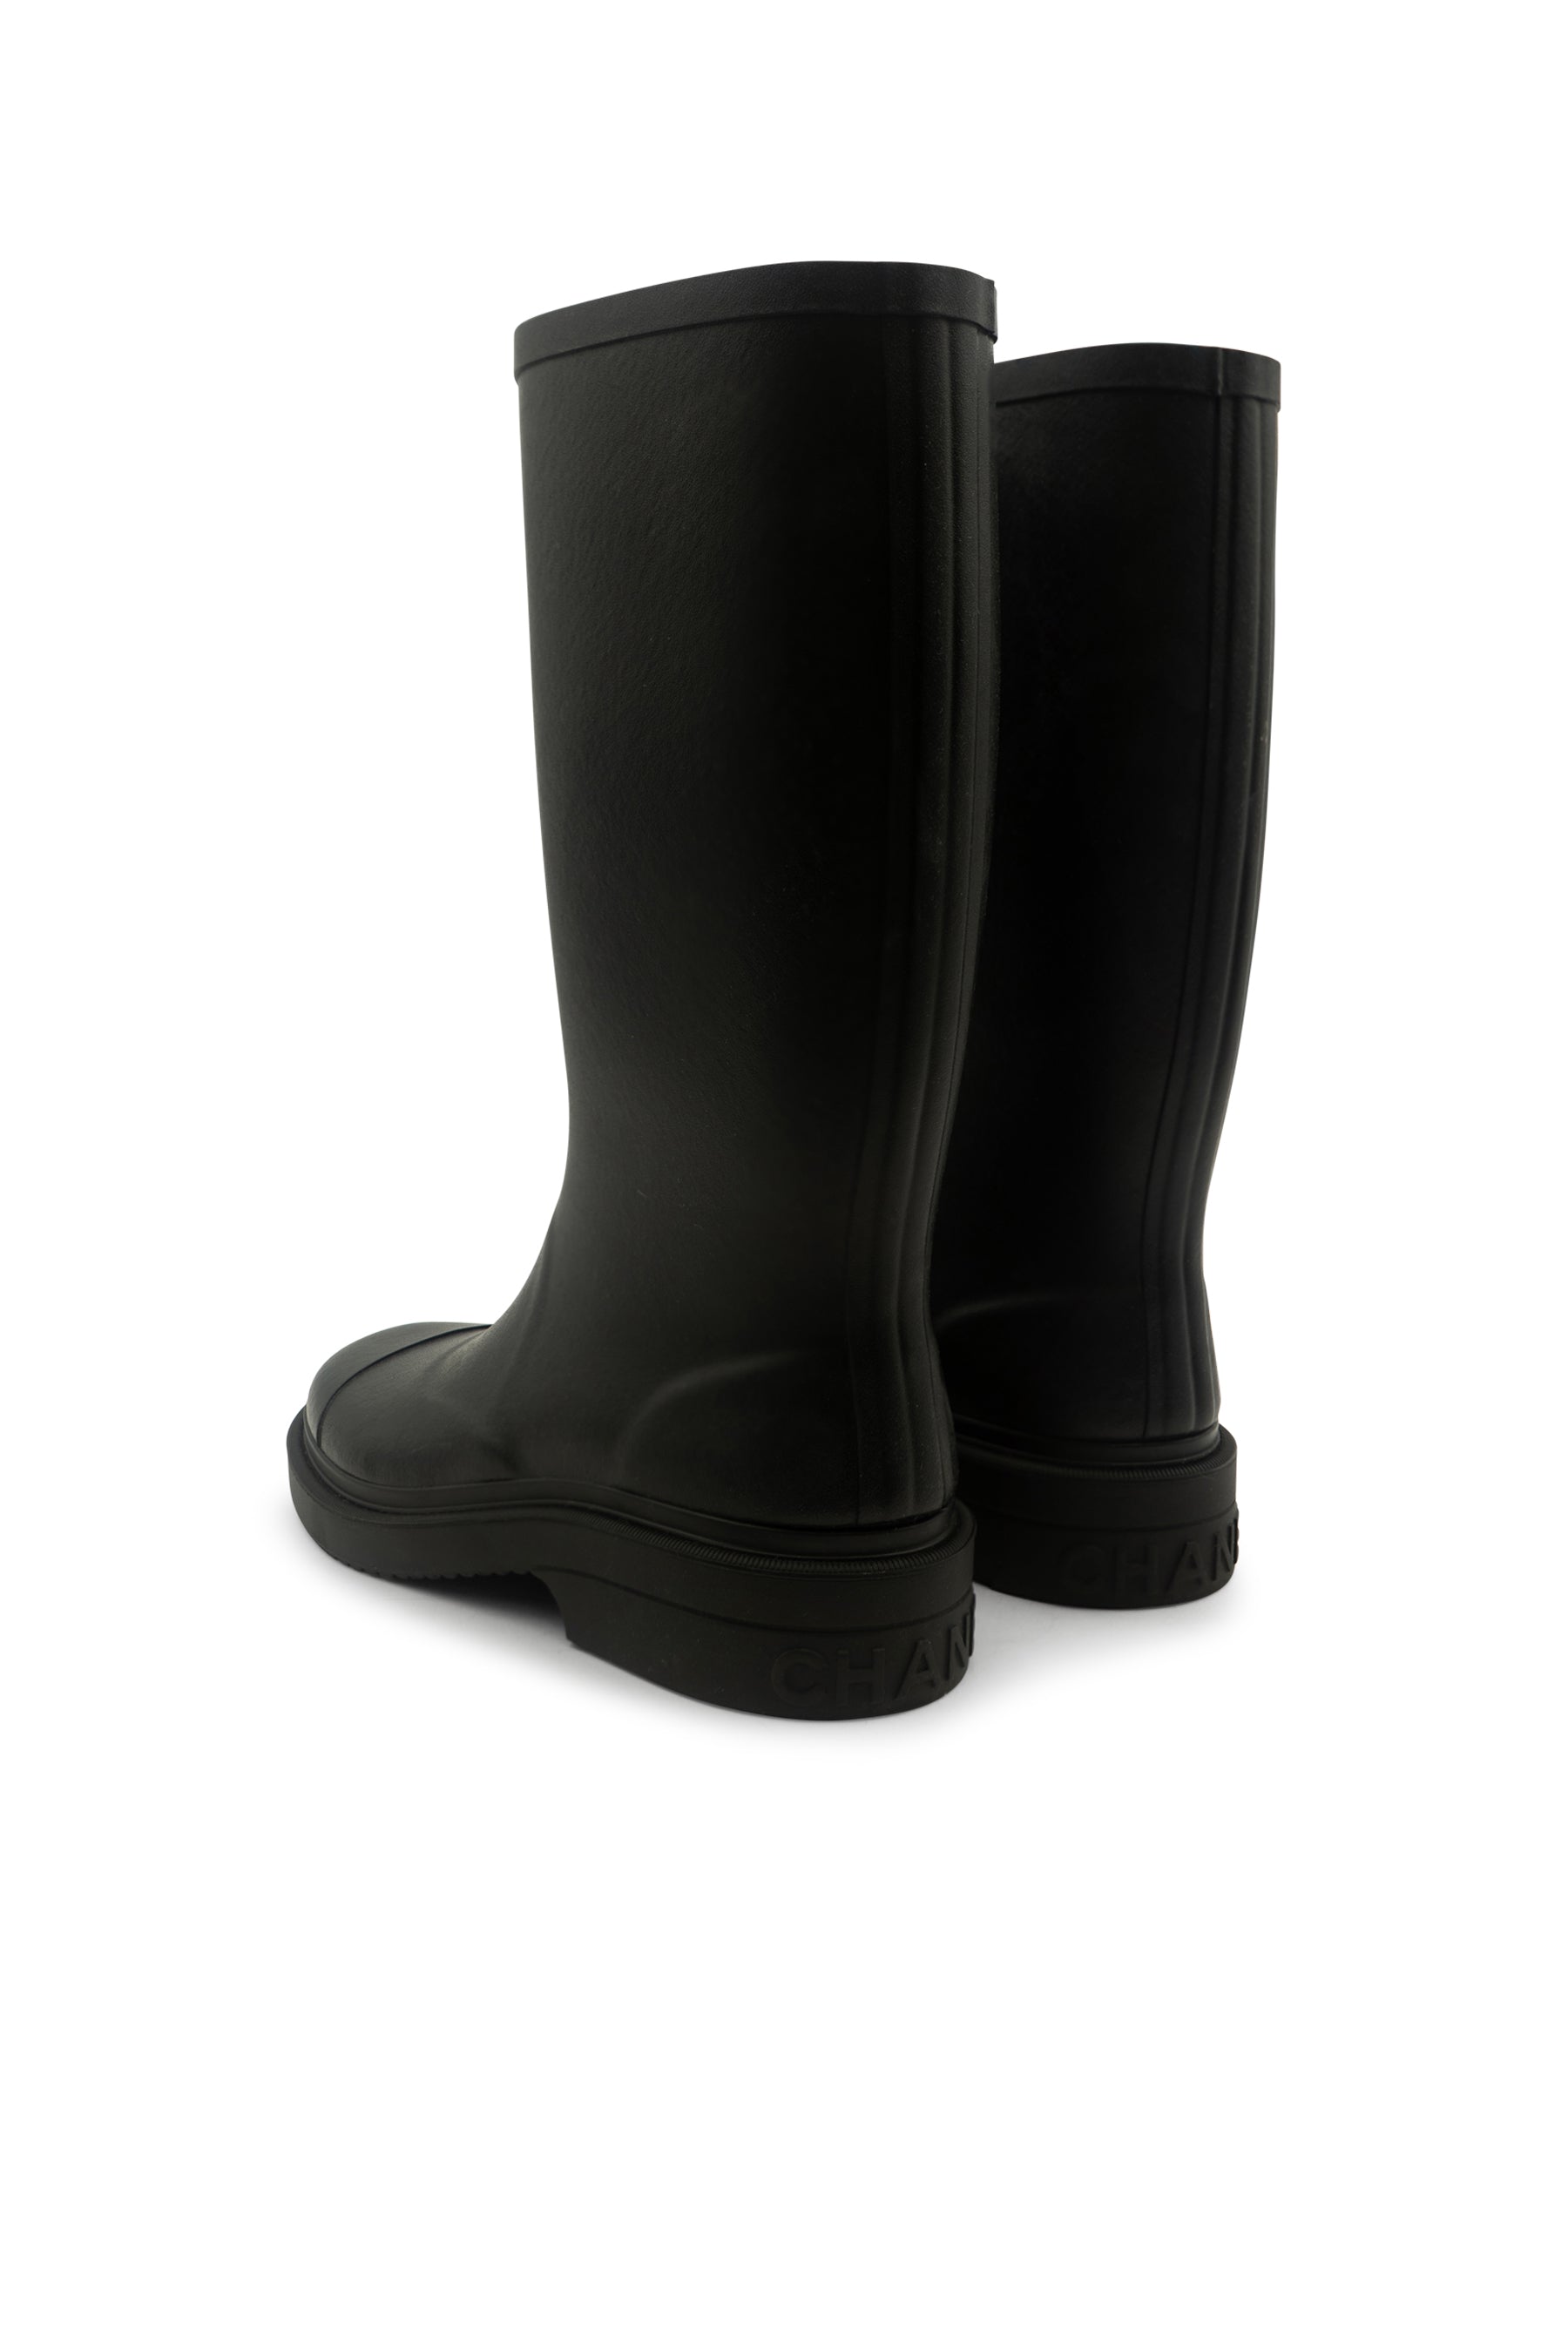 Chanel Caoutchouk CC High Rain Boots Rubber Black 2200102